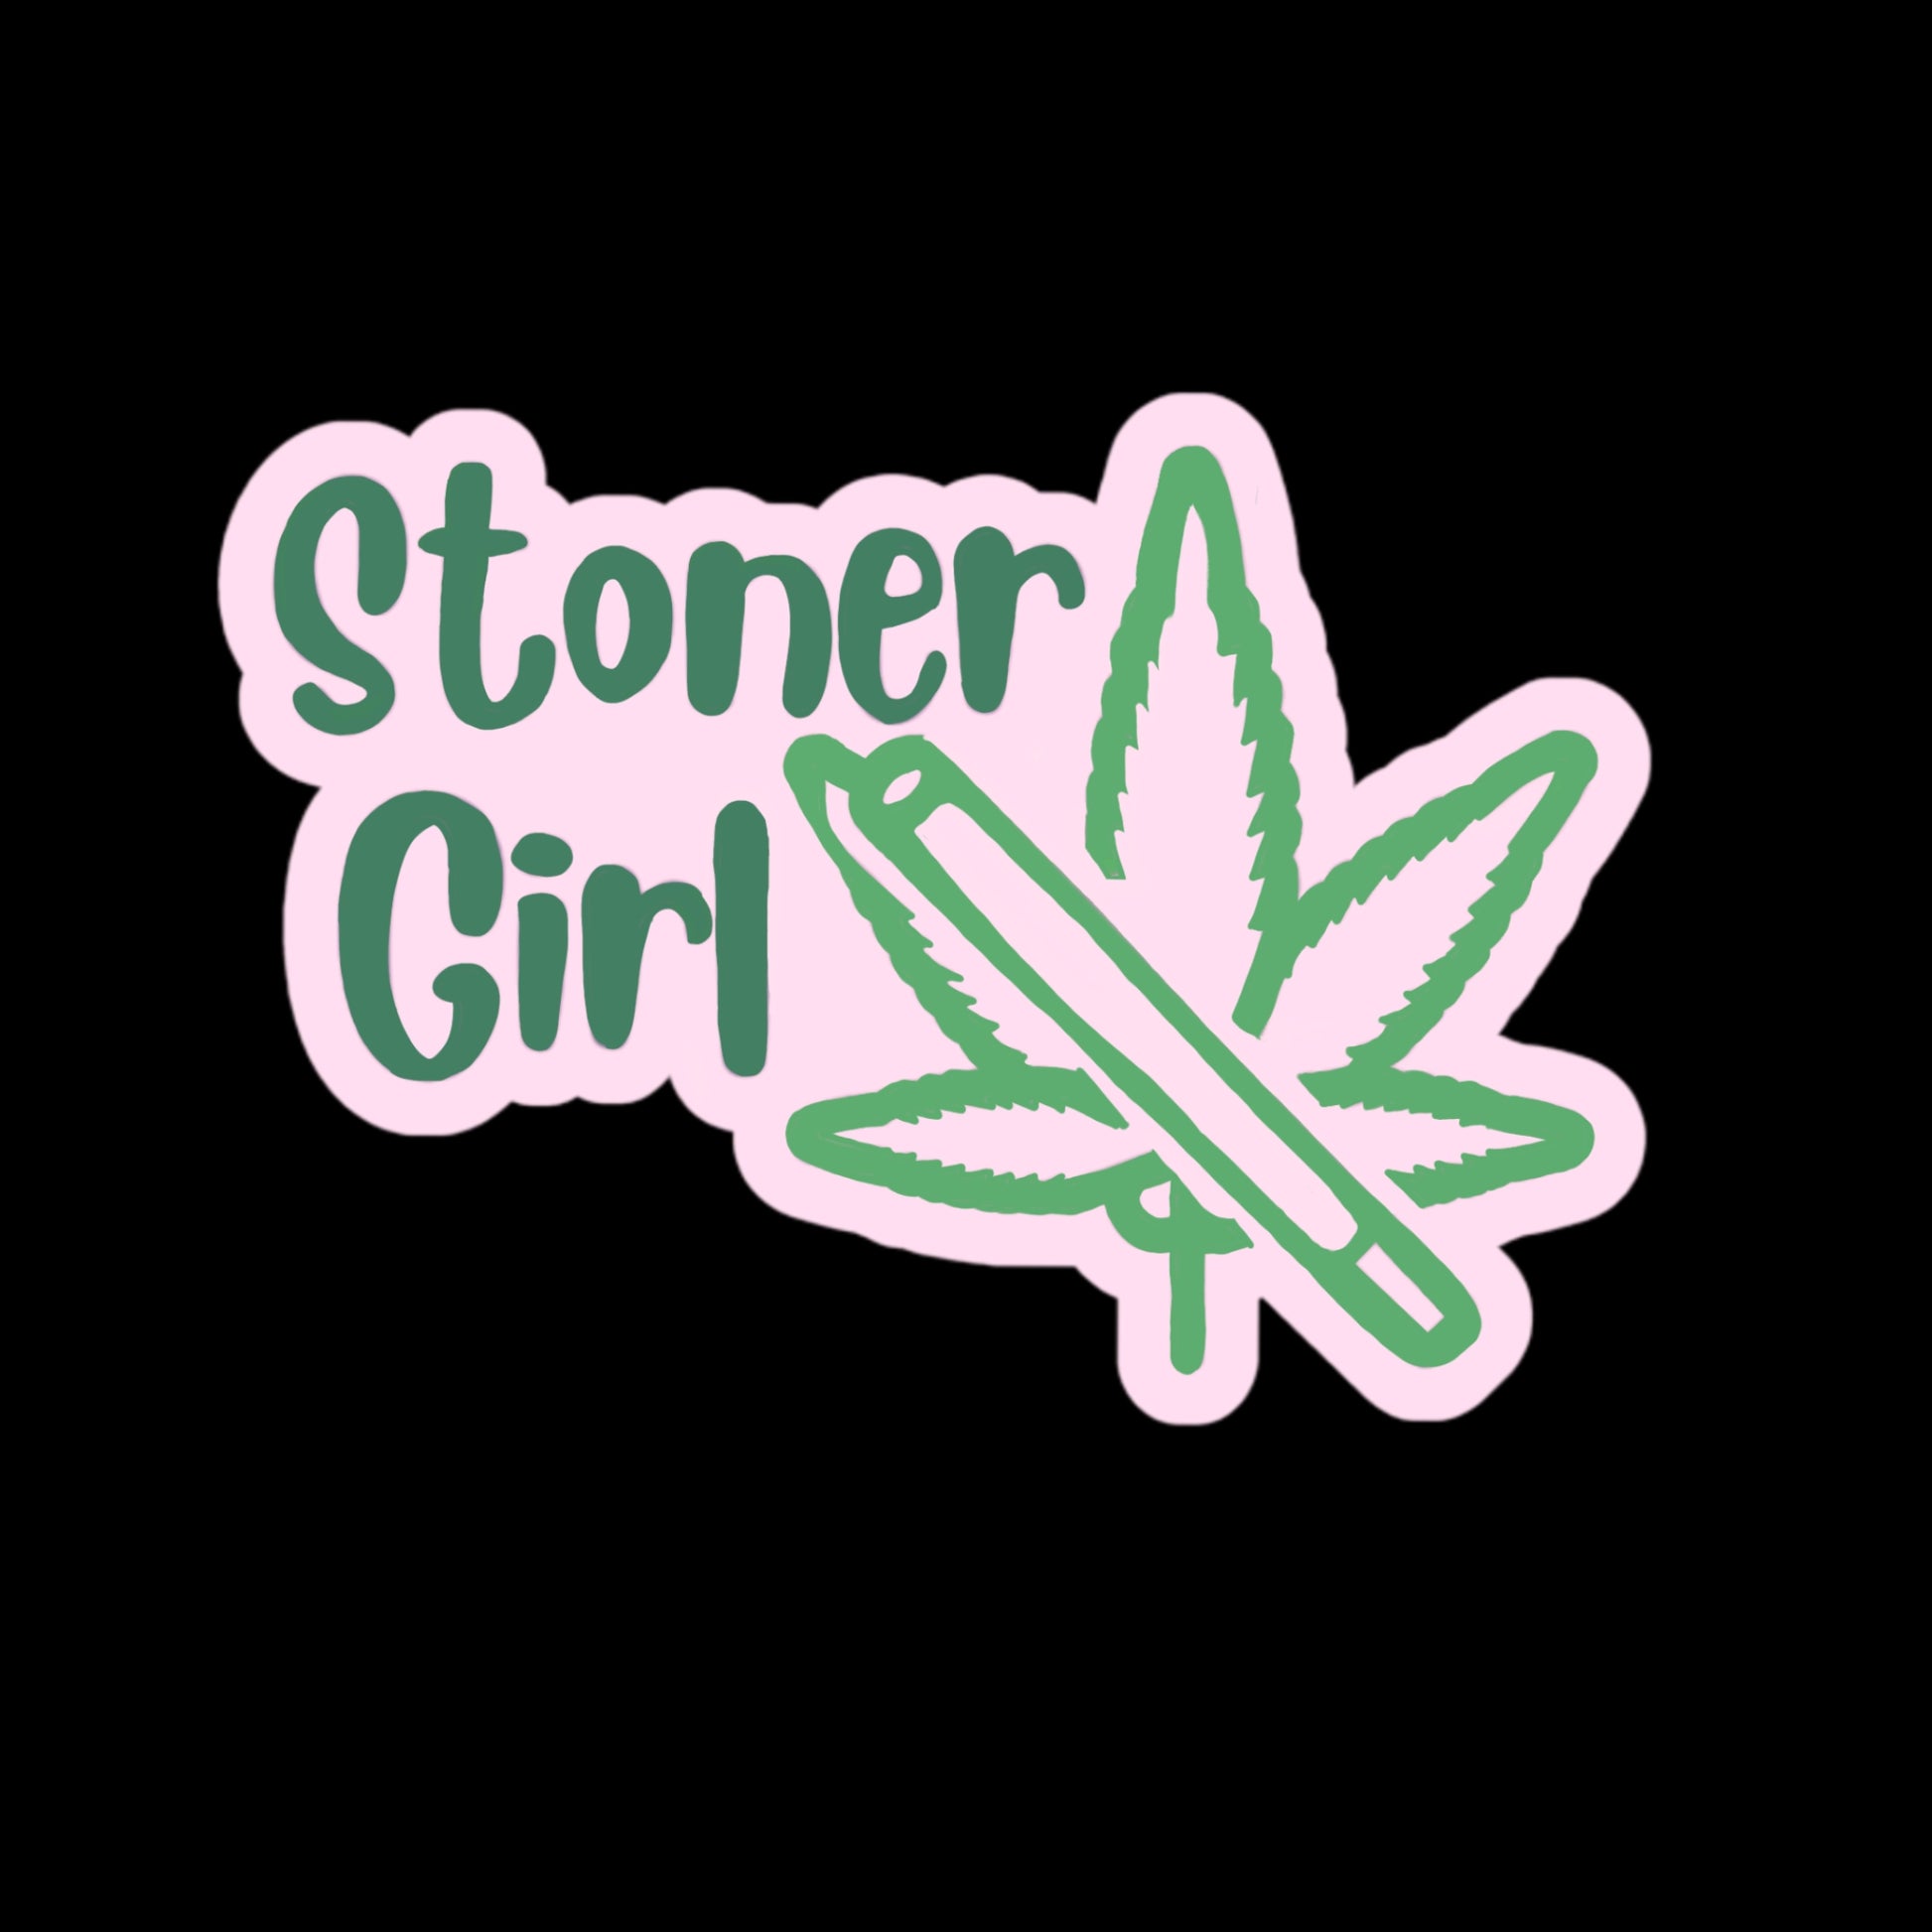 Stoner Girl Sticker- Water Bottle Sticker, Kindle Sticker, Skater Sticker - Brandi Renee Studio